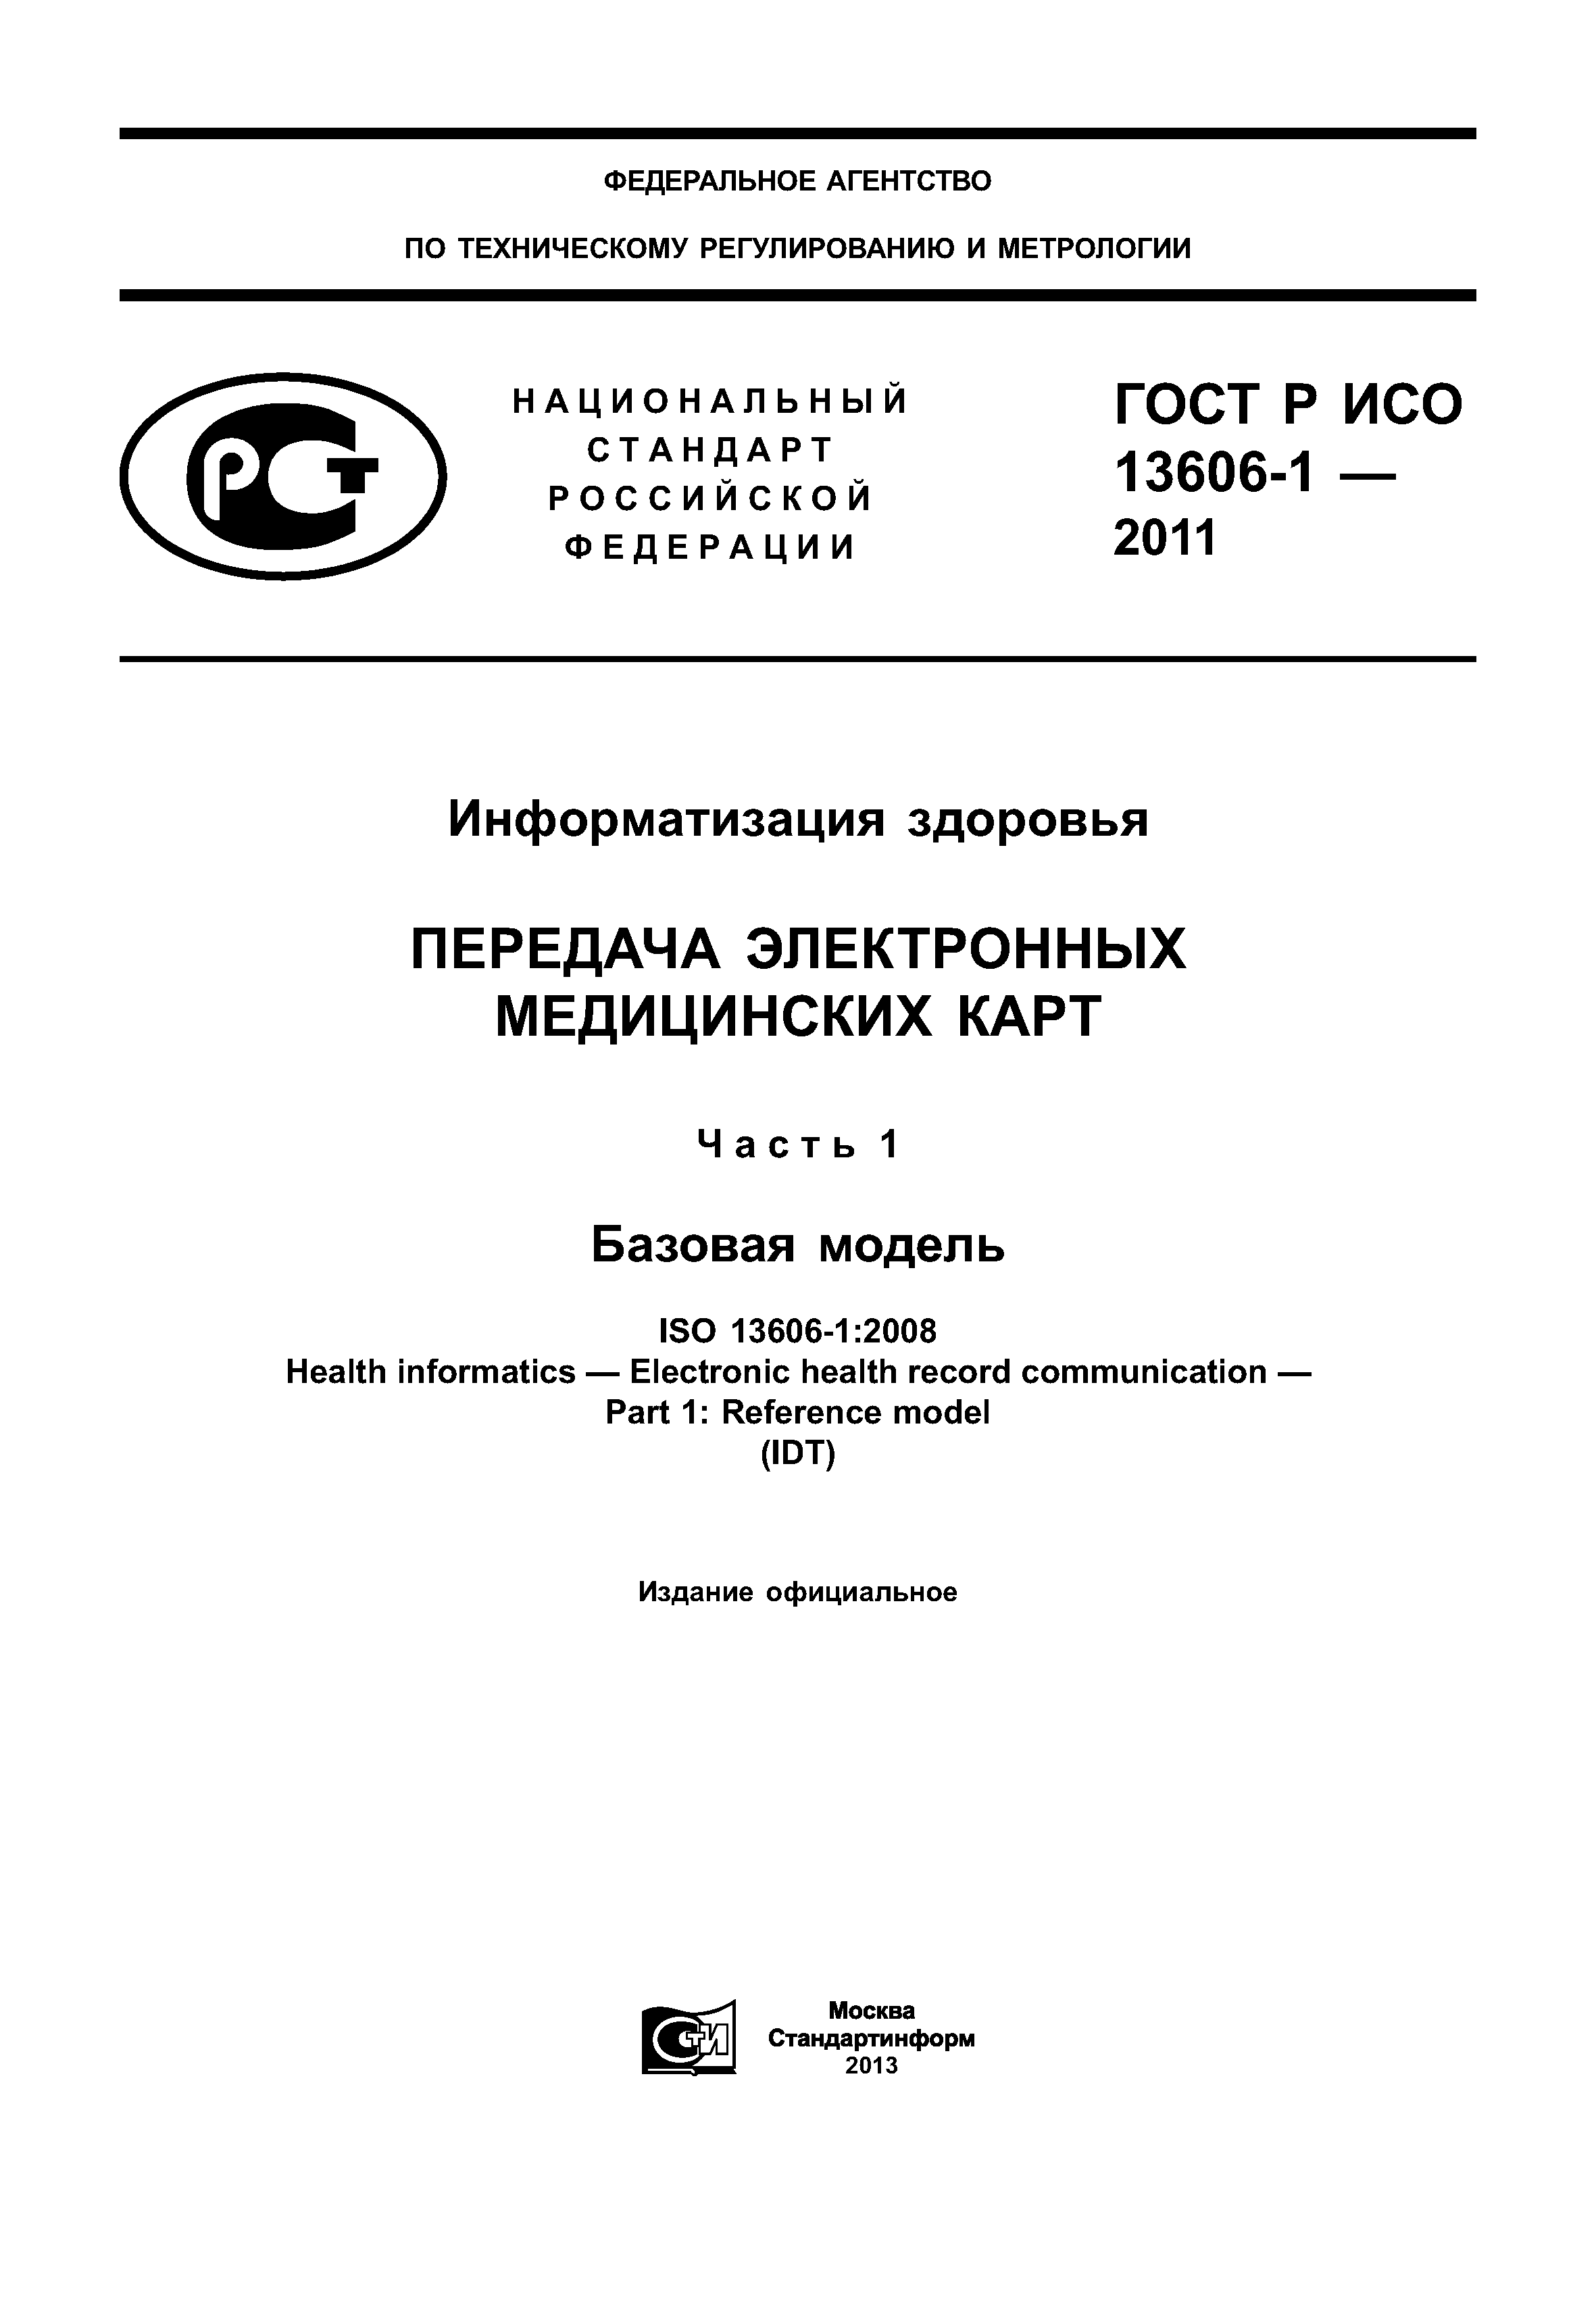 ГОСТ Р ИСО 13606-1-2011